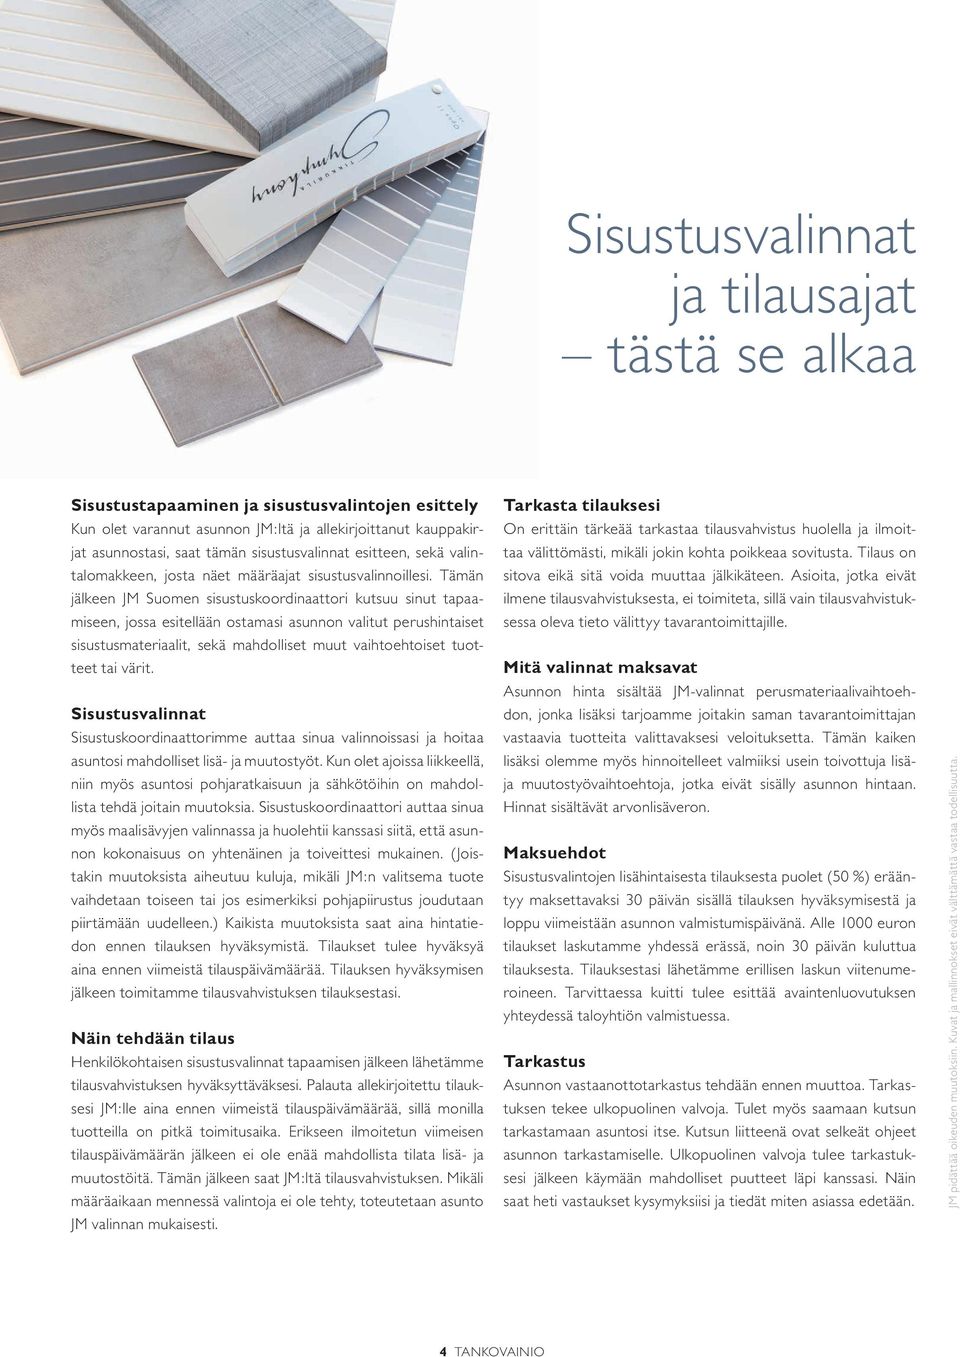 Tämän jälkeen JM Suomen sisustuskoordinaattori kutsuu sinut tapaamiseen, jossa esitellään ostamasi asunnon valitut perushintaiset sisustusmateriaalit, sekä mahdolliset muut vaihtoehtoiset tuotteet